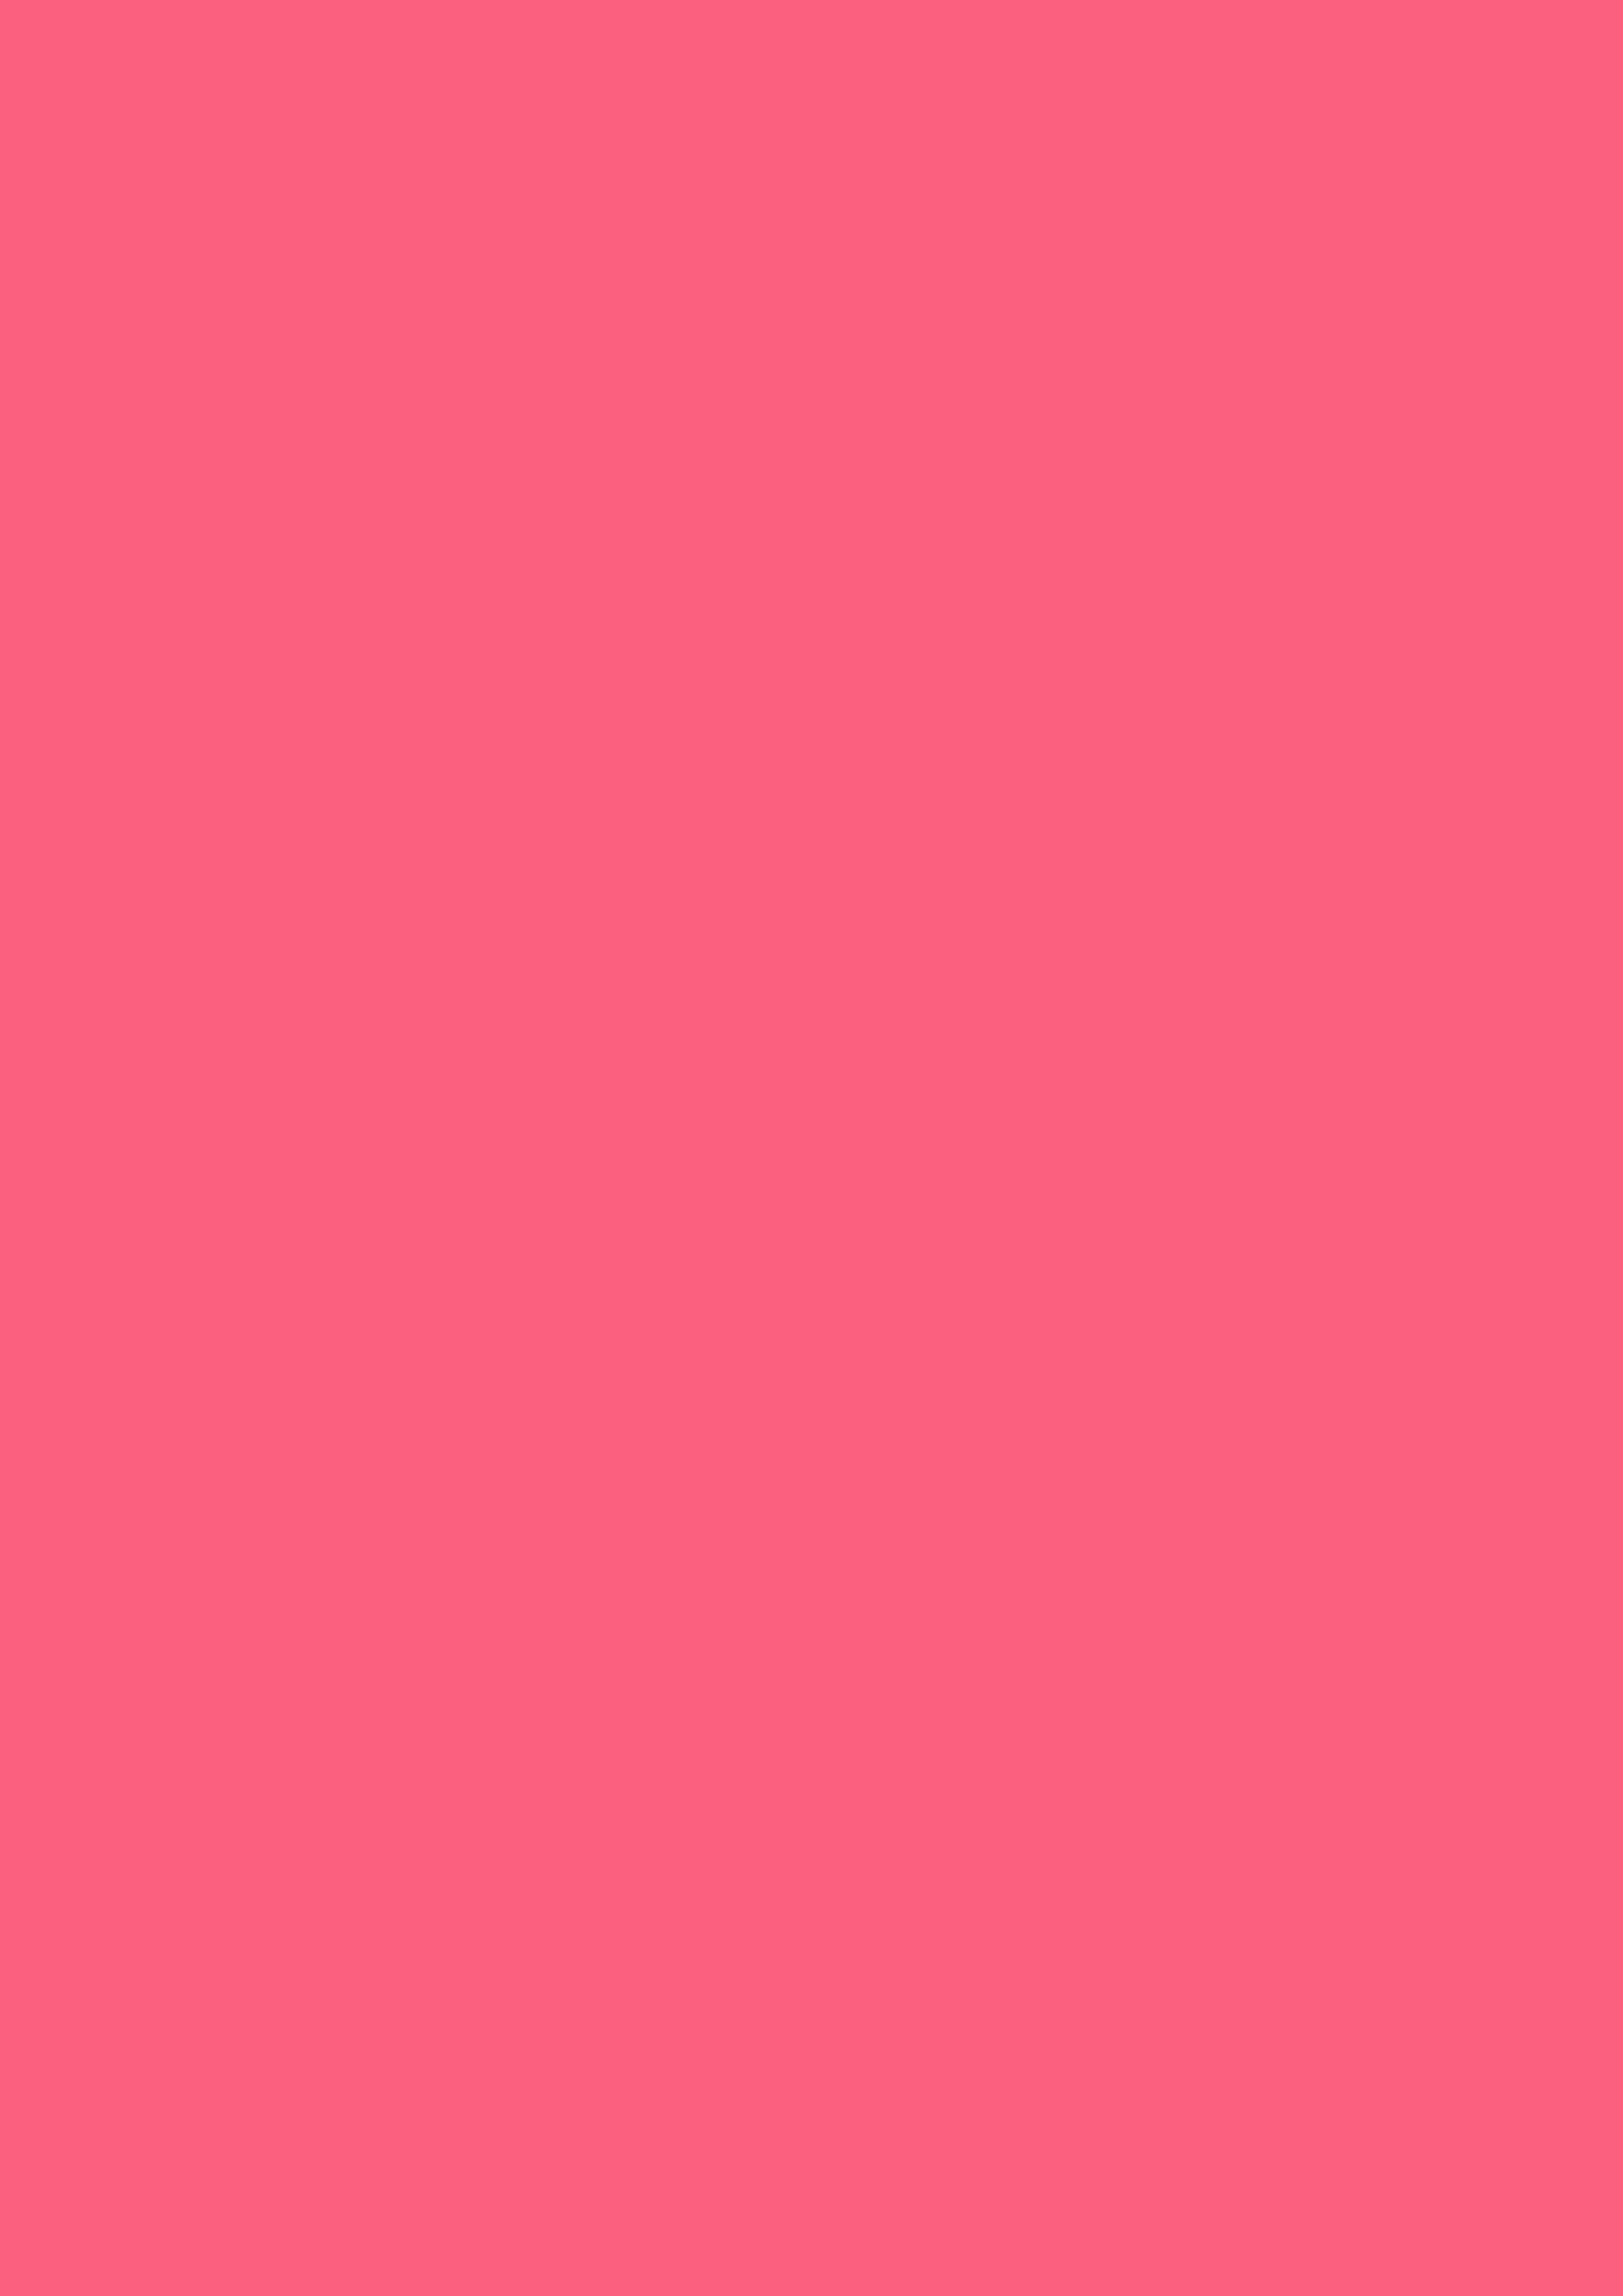 2480x3508 Brink Pink Solid Color Background